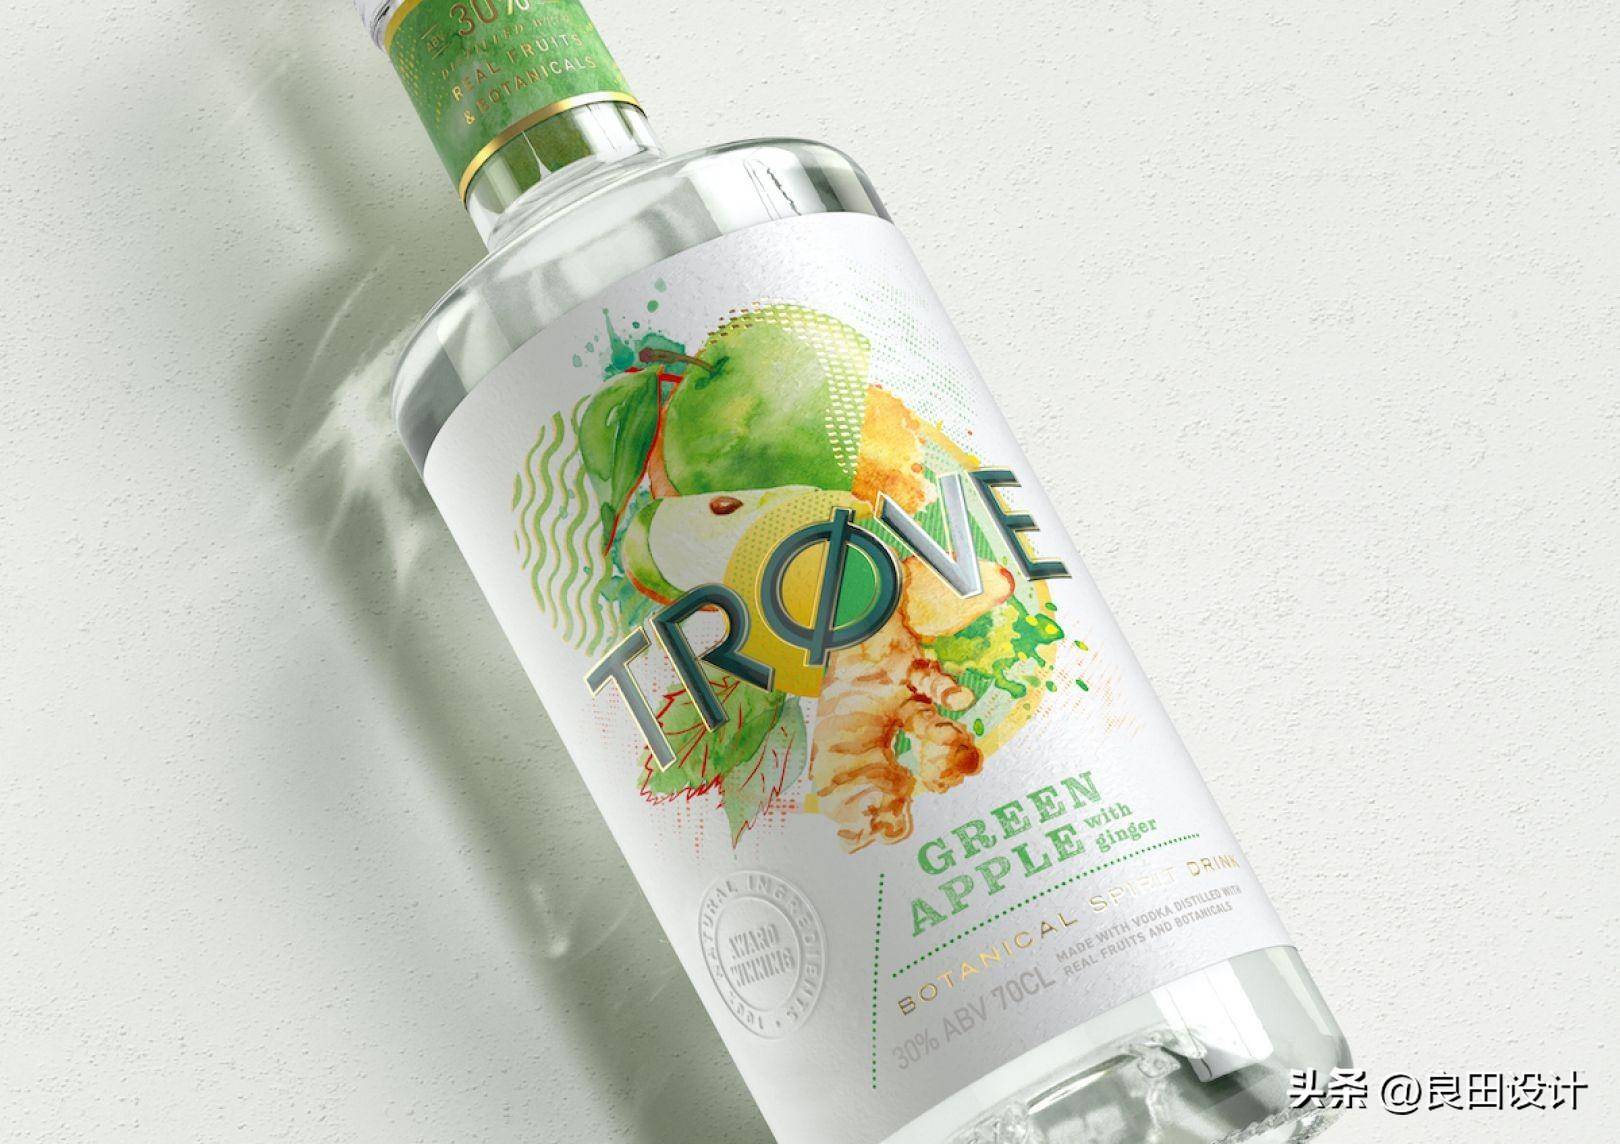 苹果主题插图手绘版:为新的低酒精、低热量烈酒品牌 TRØVE 创作的酒包装设计-第1张图片-太平洋在线下载